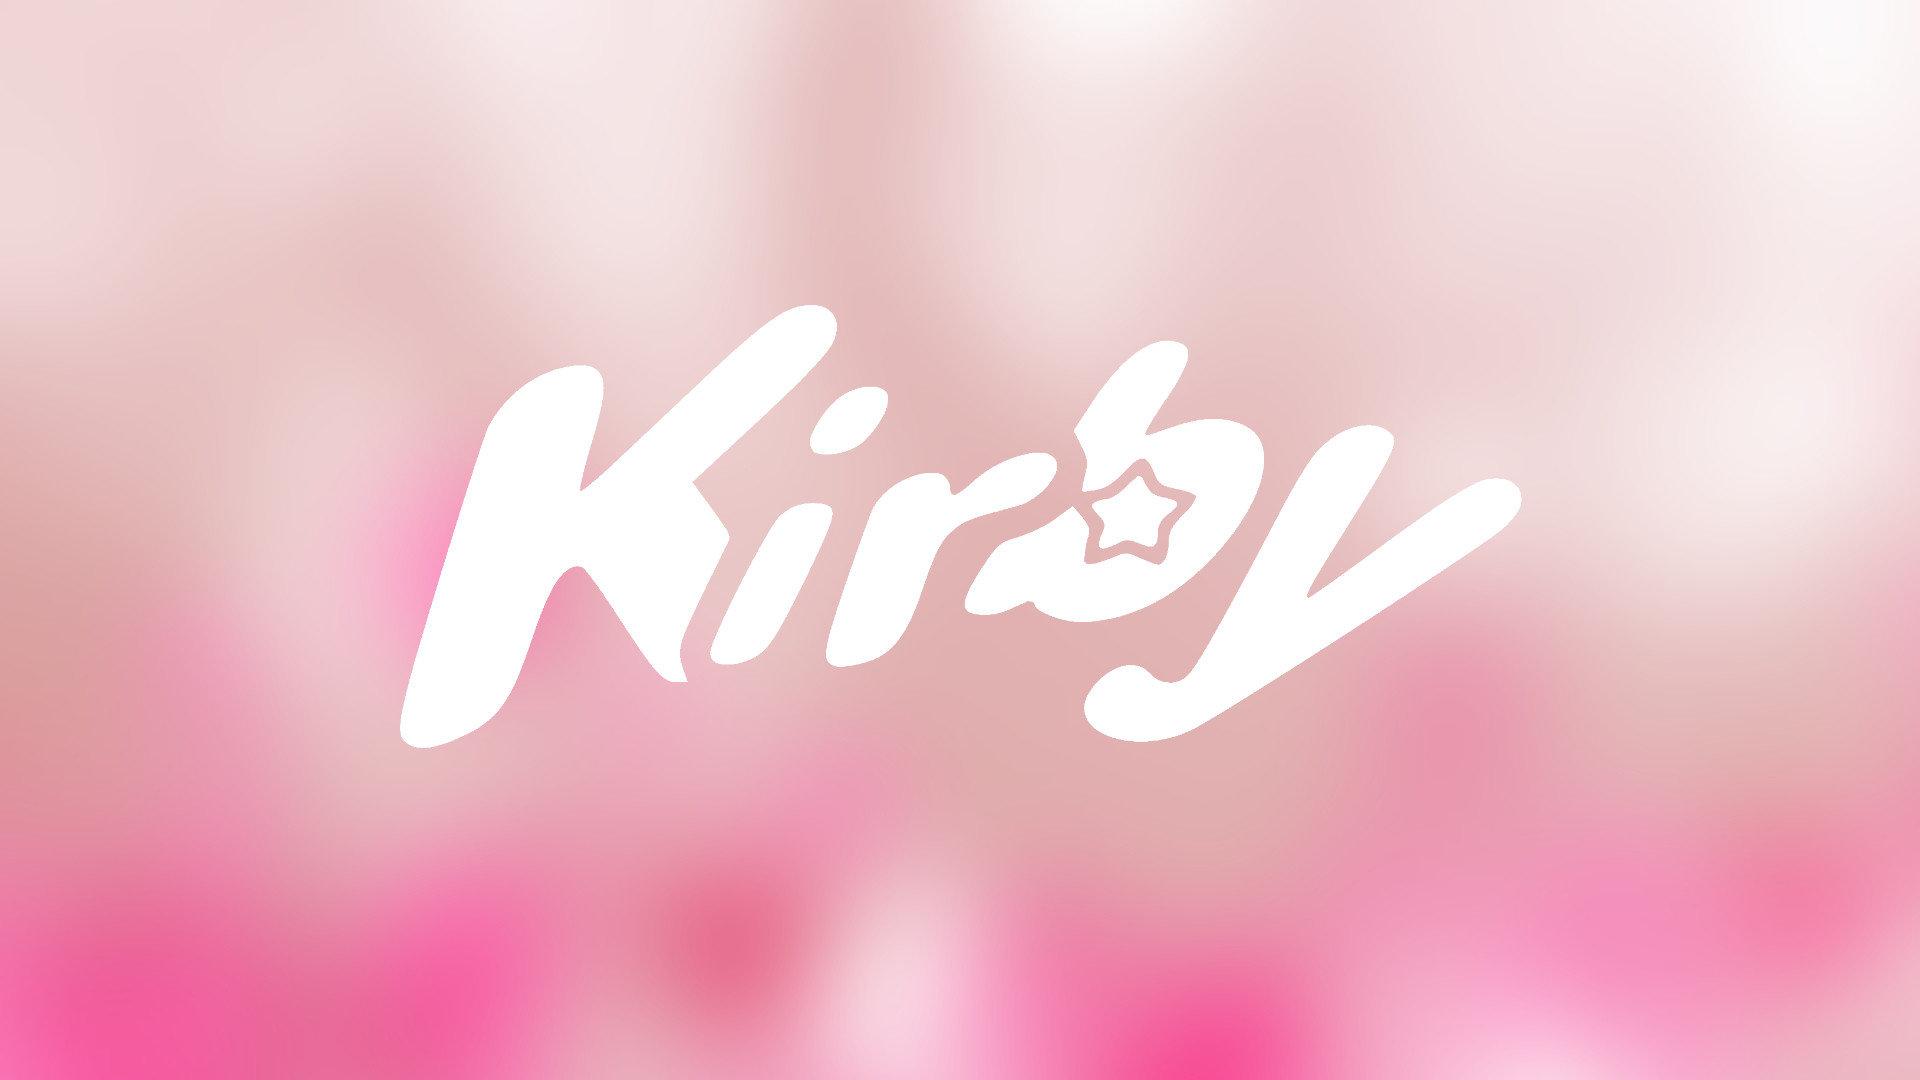 1920x1080 Kirby hình nền 1920x1080 Full HD (1080p) nền desktop